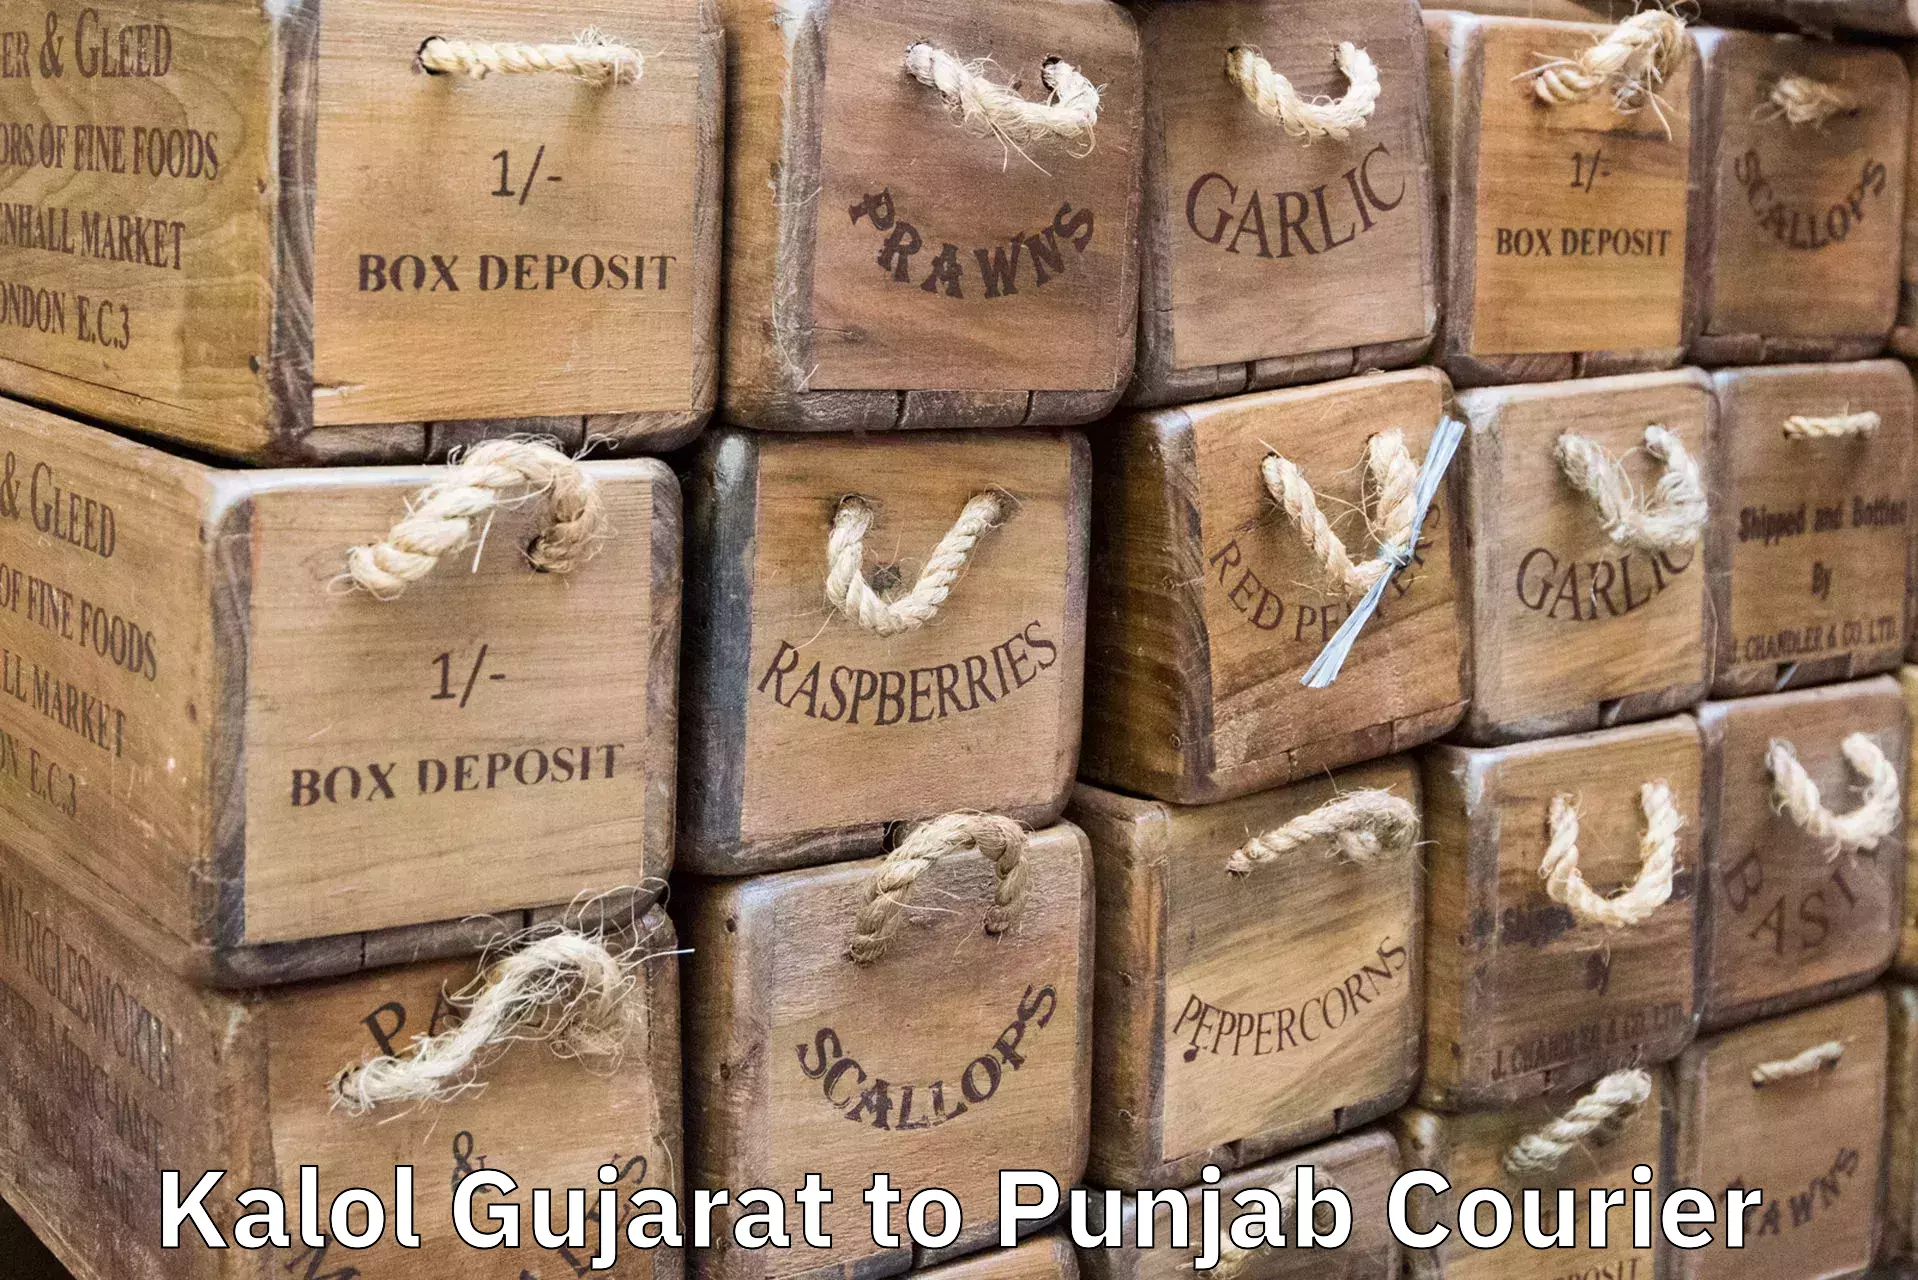 Luggage shipment processing Kalol Gujarat to Jalandhar